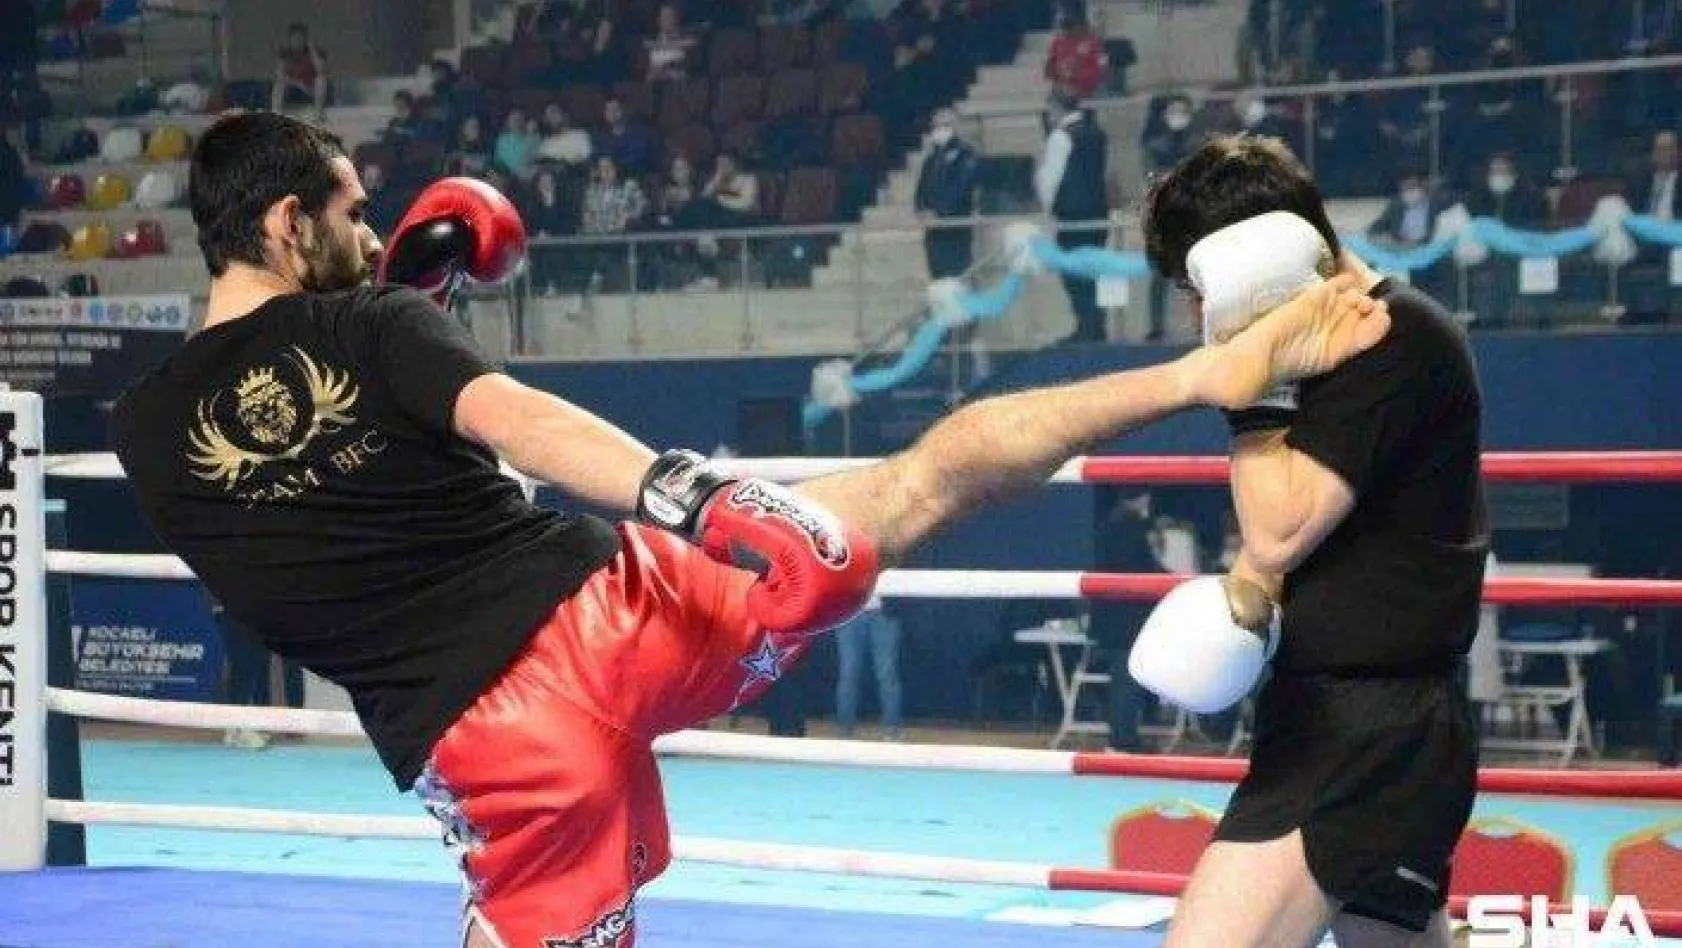 Büyükler Profesyonel Kick Boks Türkiye Şampiyonası Kocaeli'de başladı